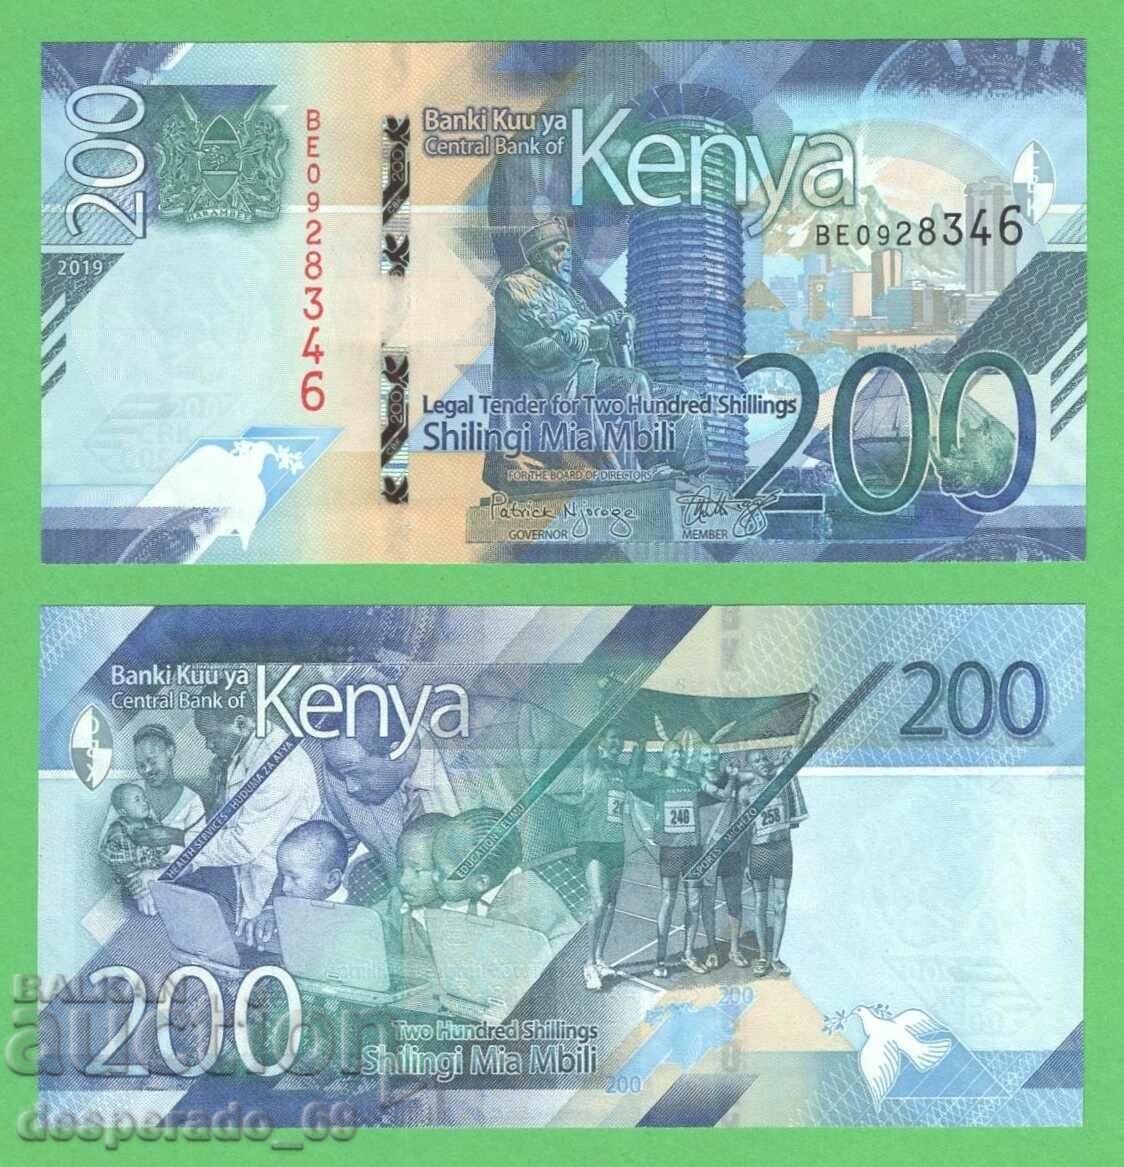 (¯`'•.¸ KENYA 200 șilingi 2019 UNC ¸.•'´¯)